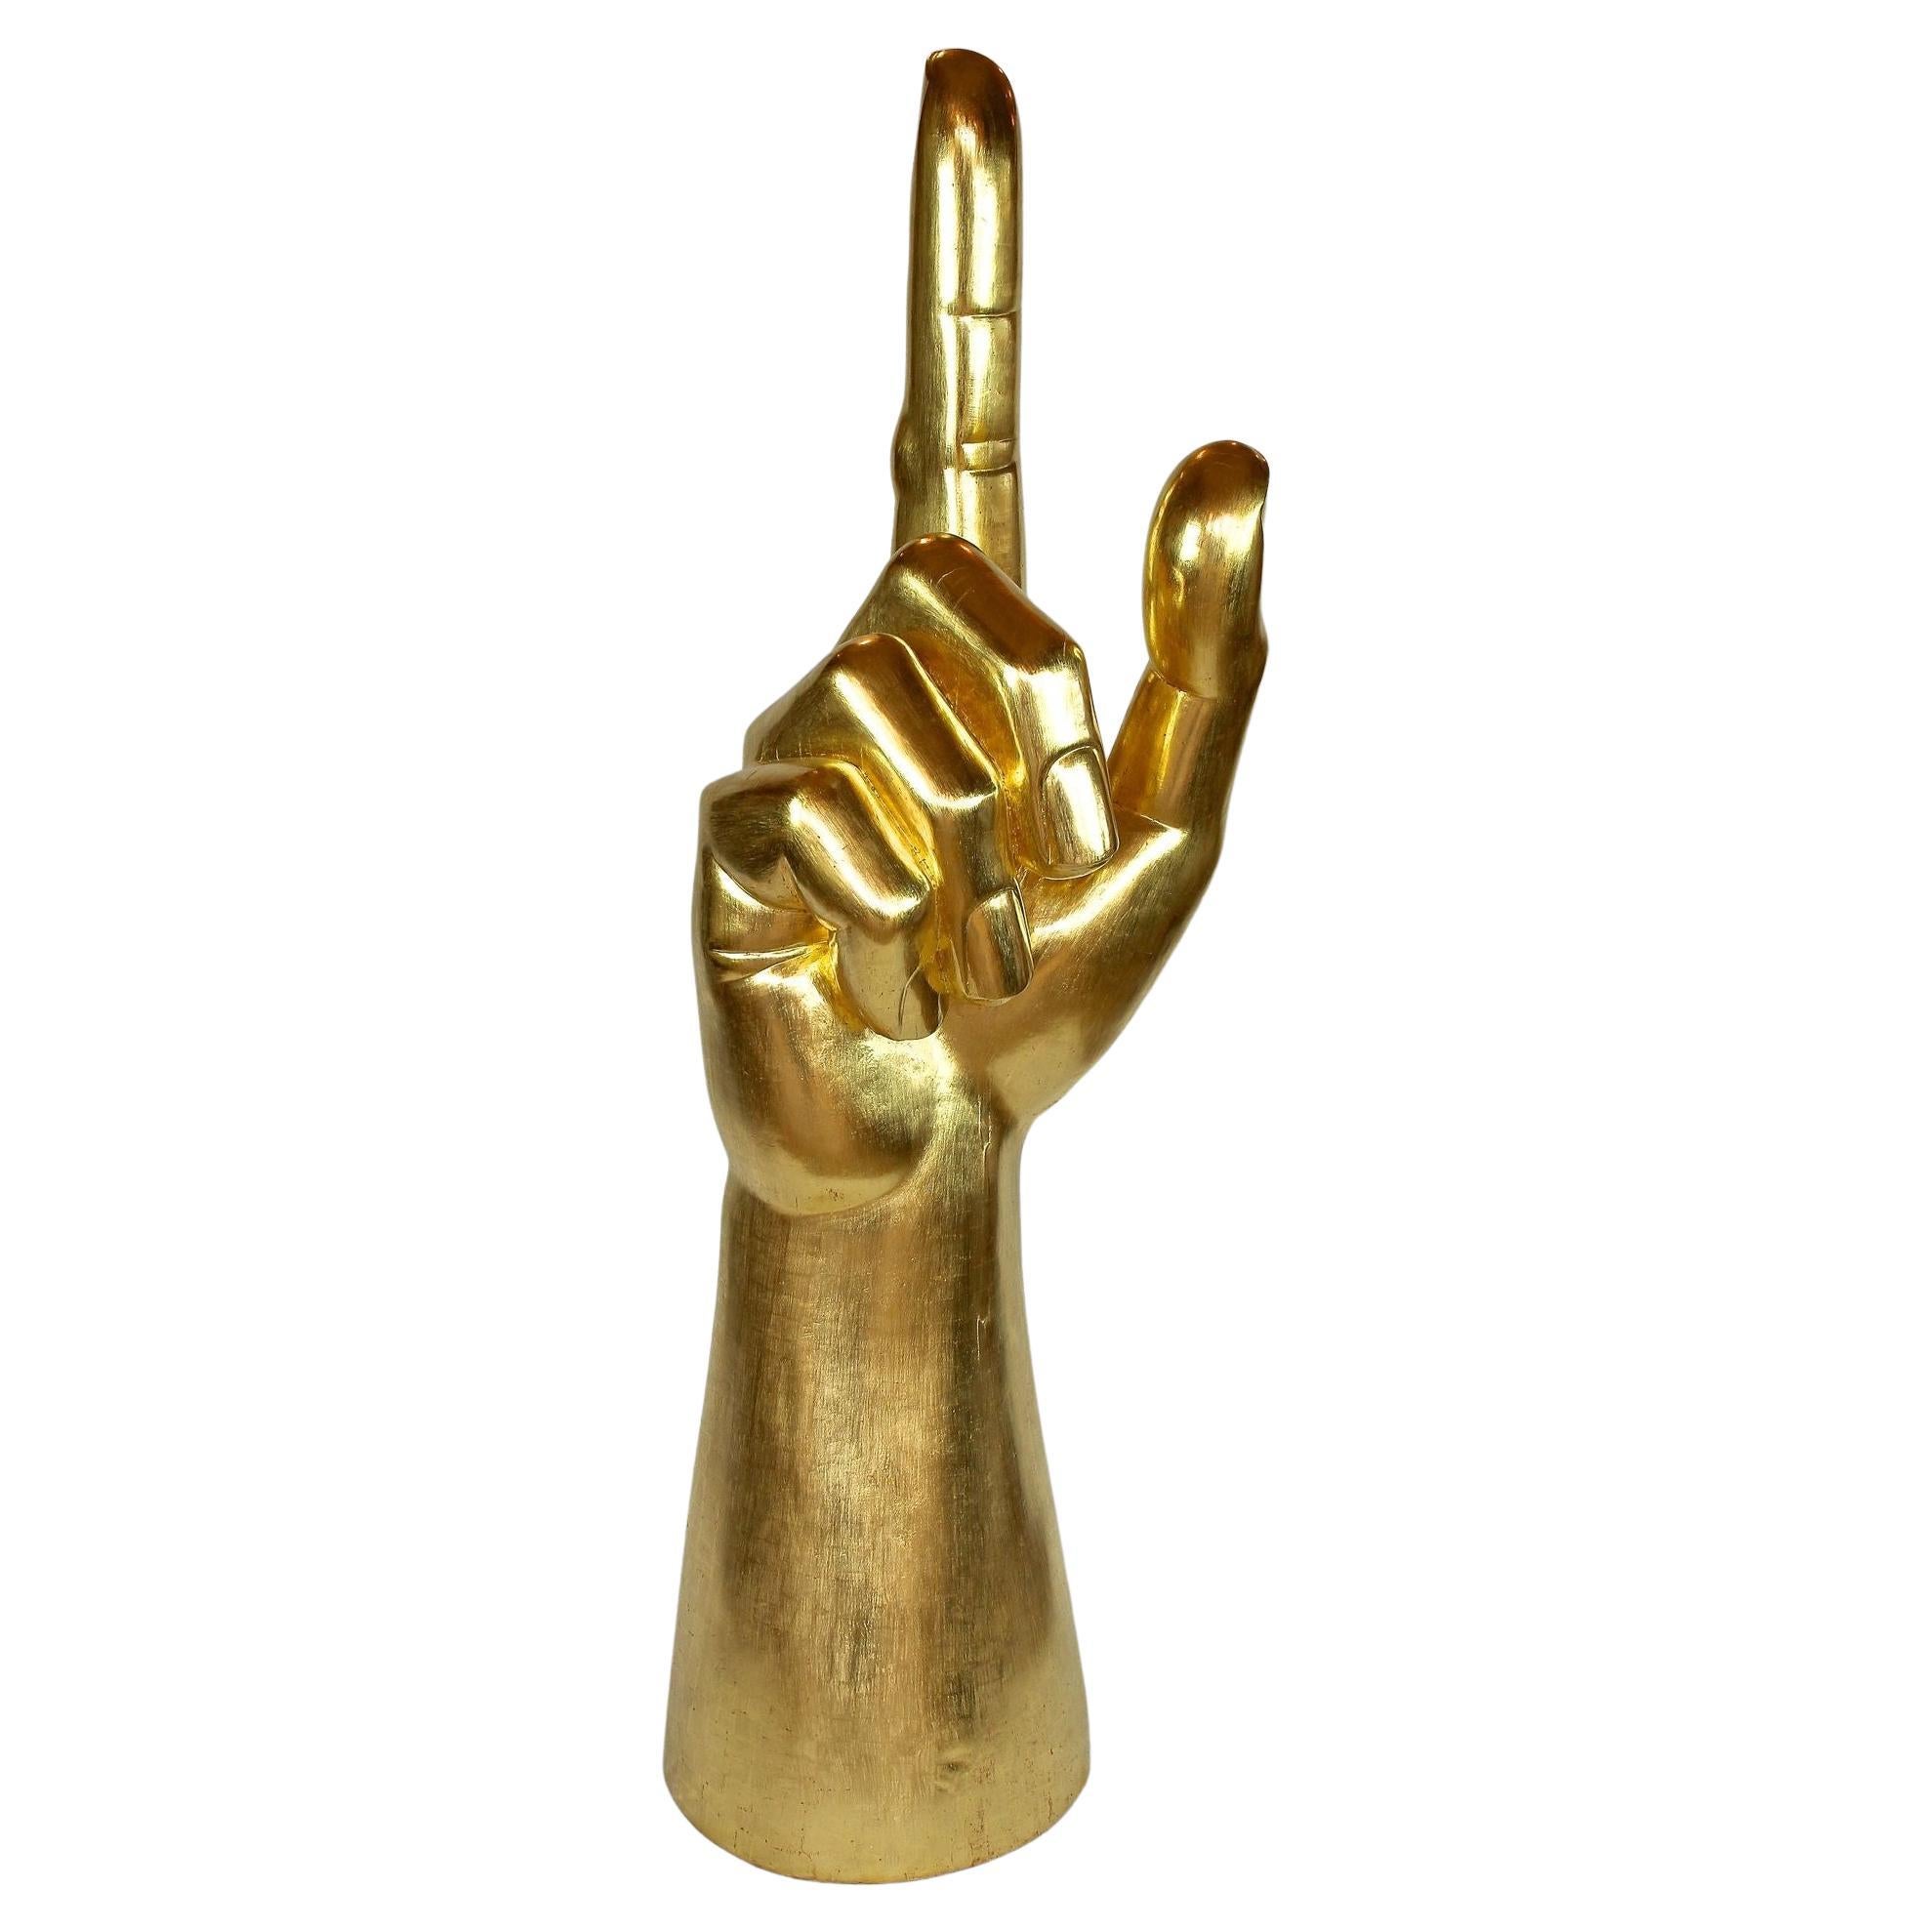 Gigantic Hand-Skulptur, blattvergoldet, von M. Treml, Österreich, 2021